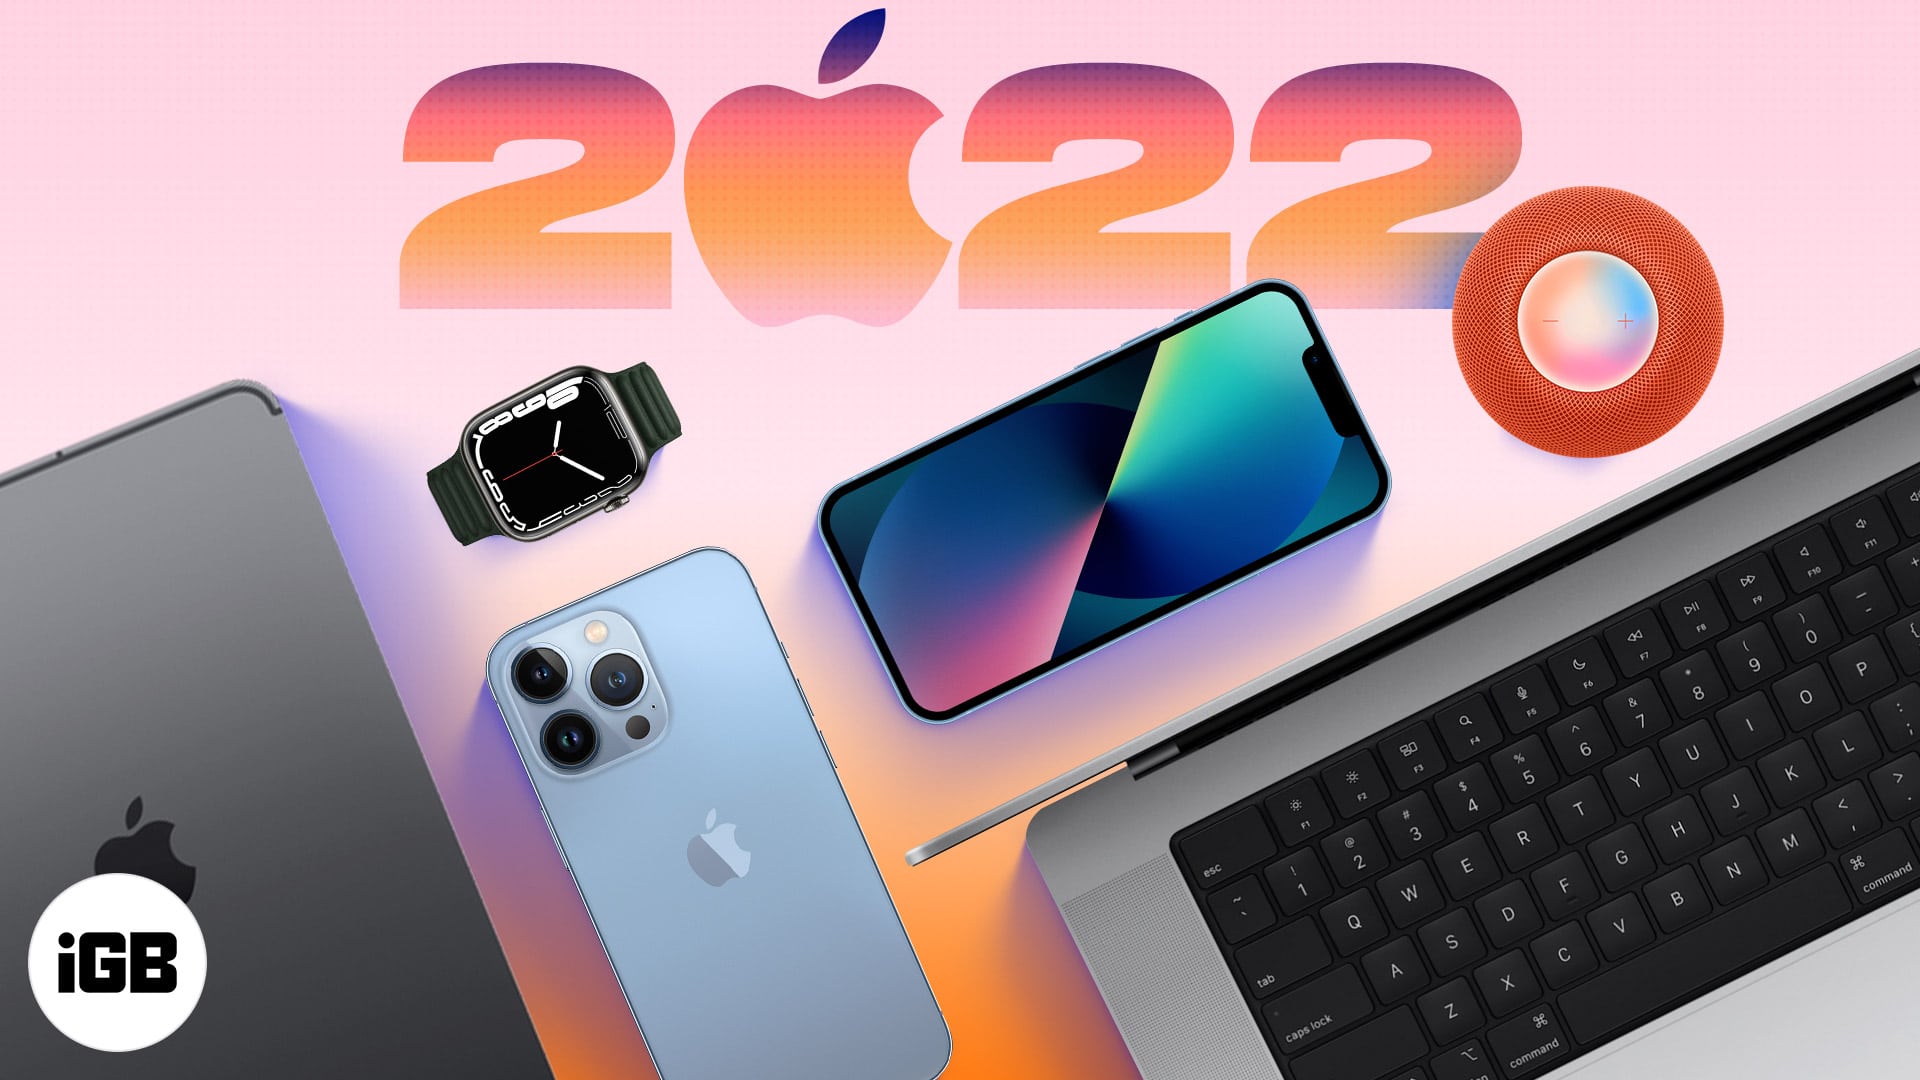 Mire számíthatunk az Apple-től 2022-ben? - Apple AR/VR headset, Mac mini, iPad Pro és még sok más